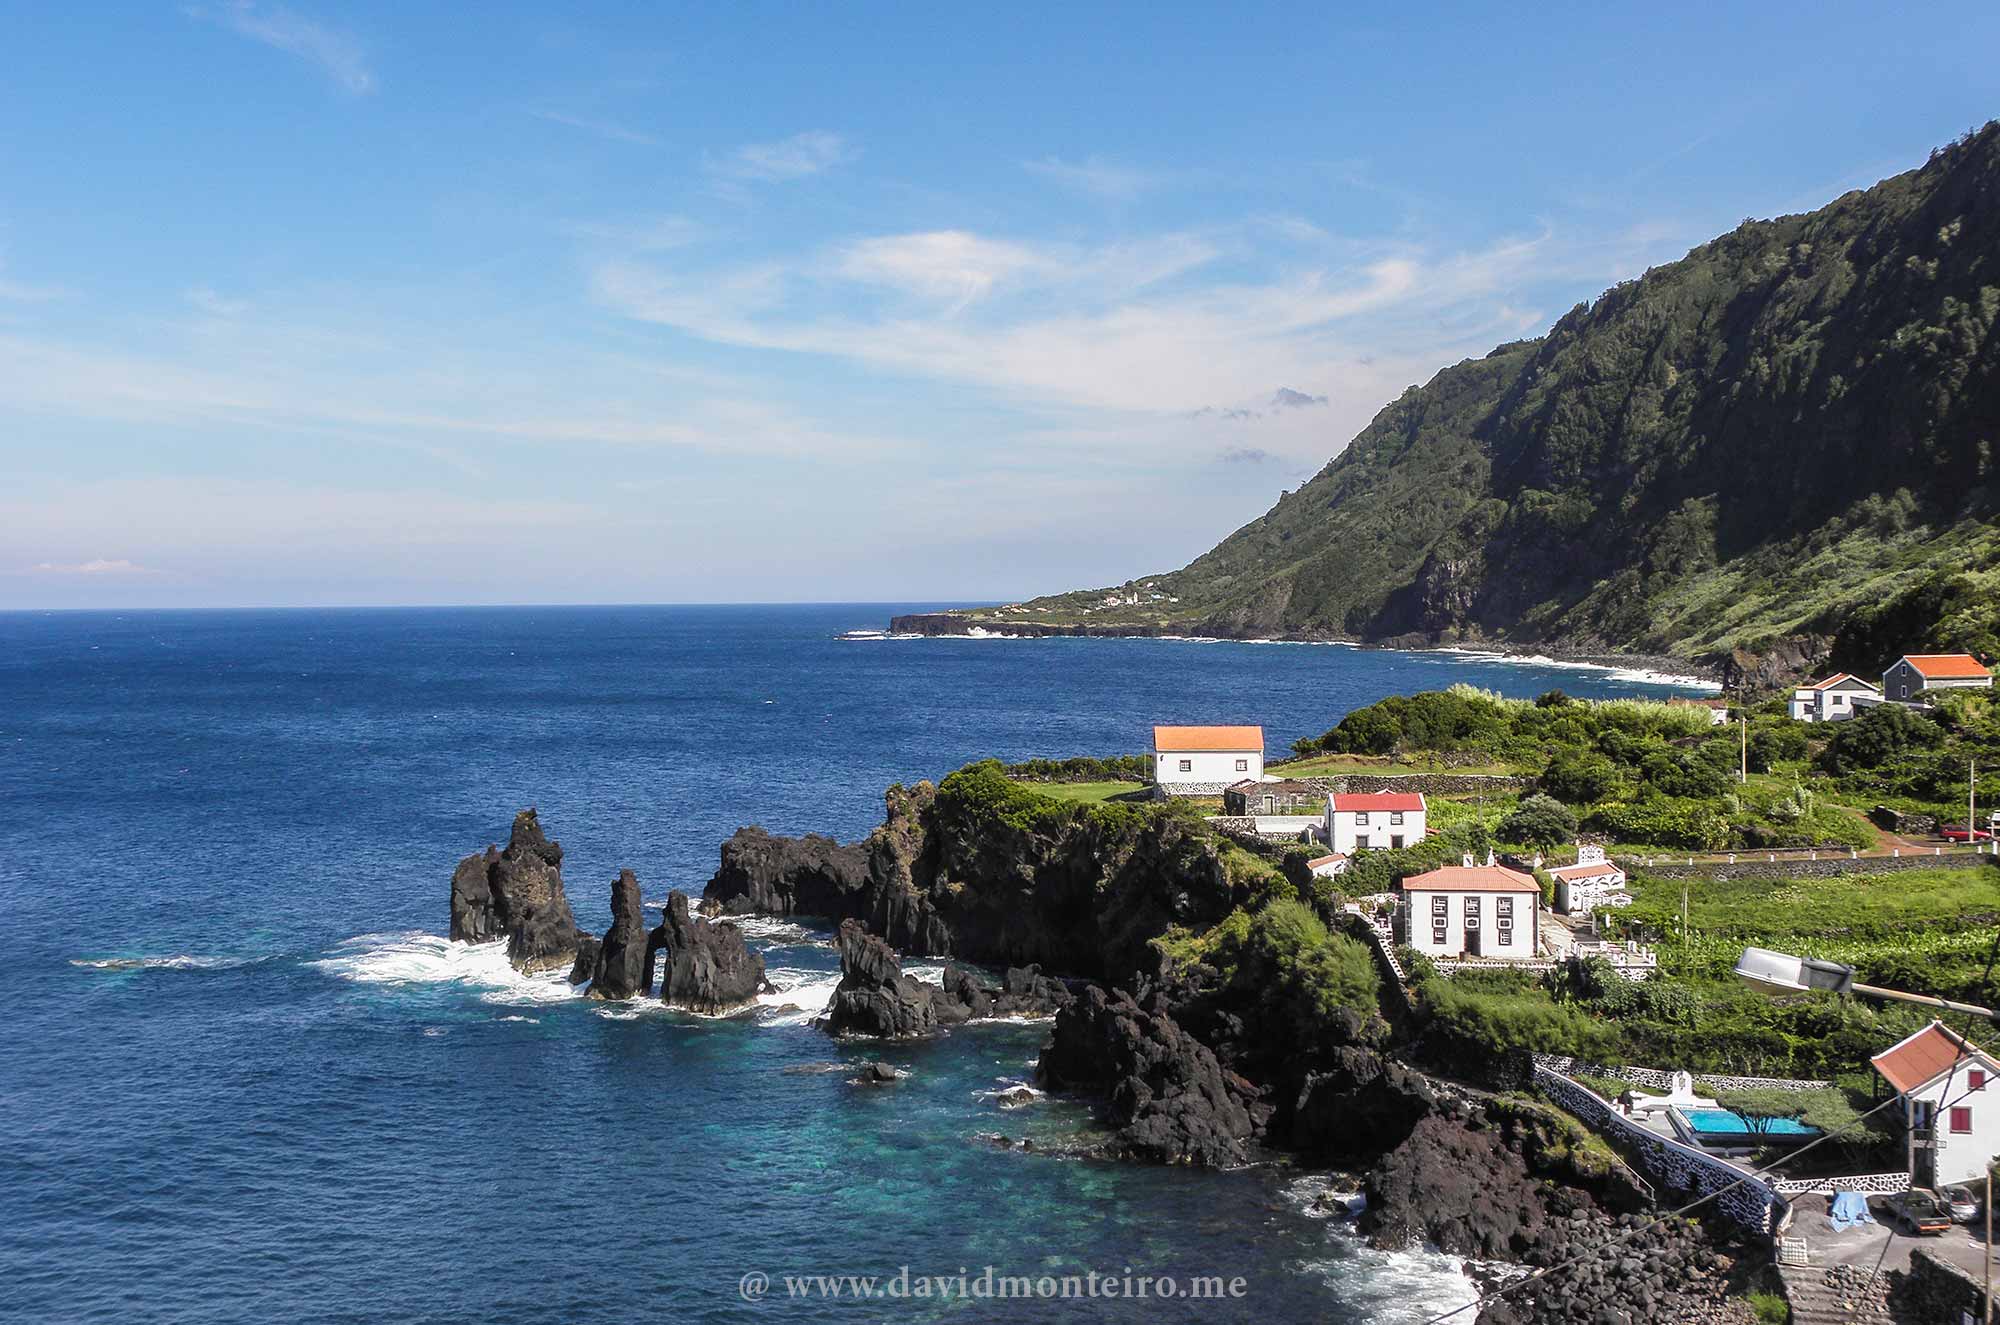 São Jorge, Azores Islands, Portugal